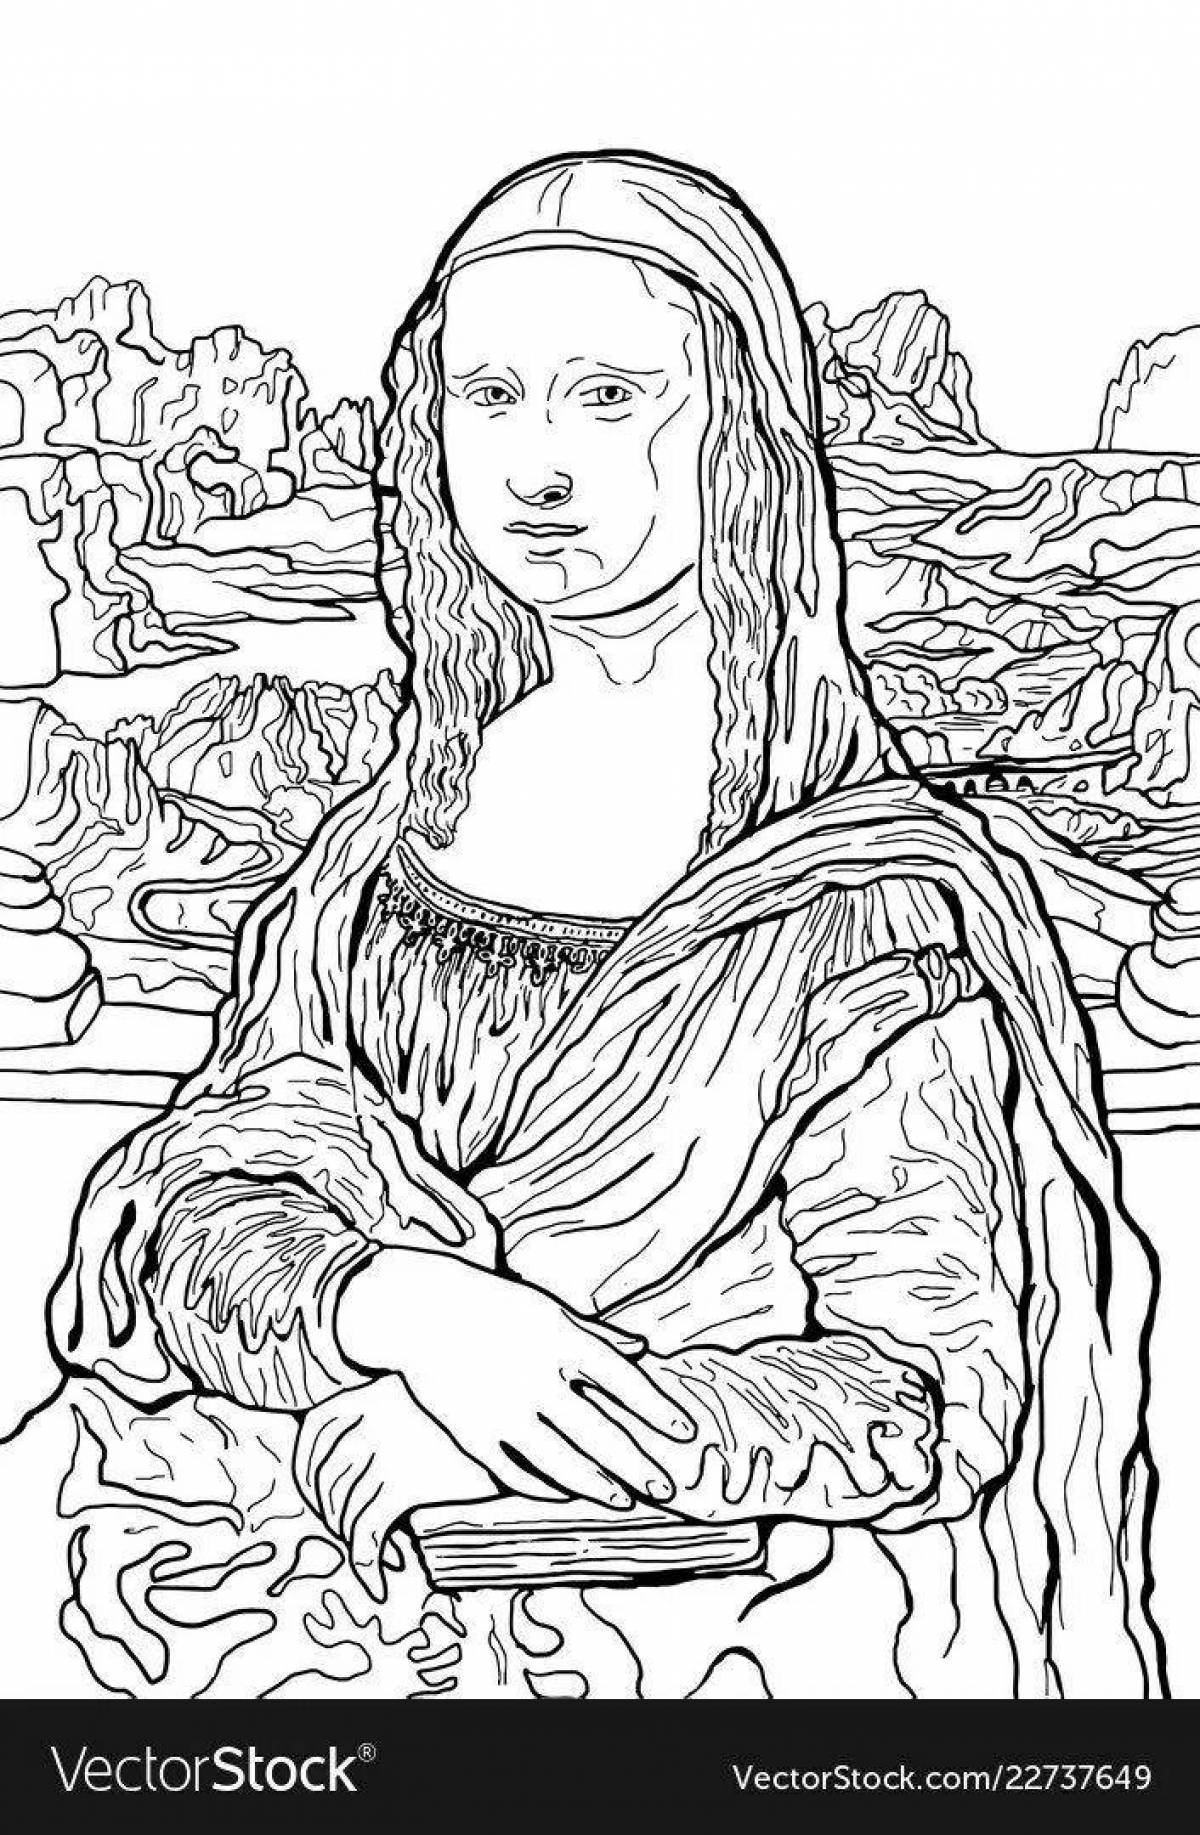 Леонардо да Винчи Мона Лиза черно белая